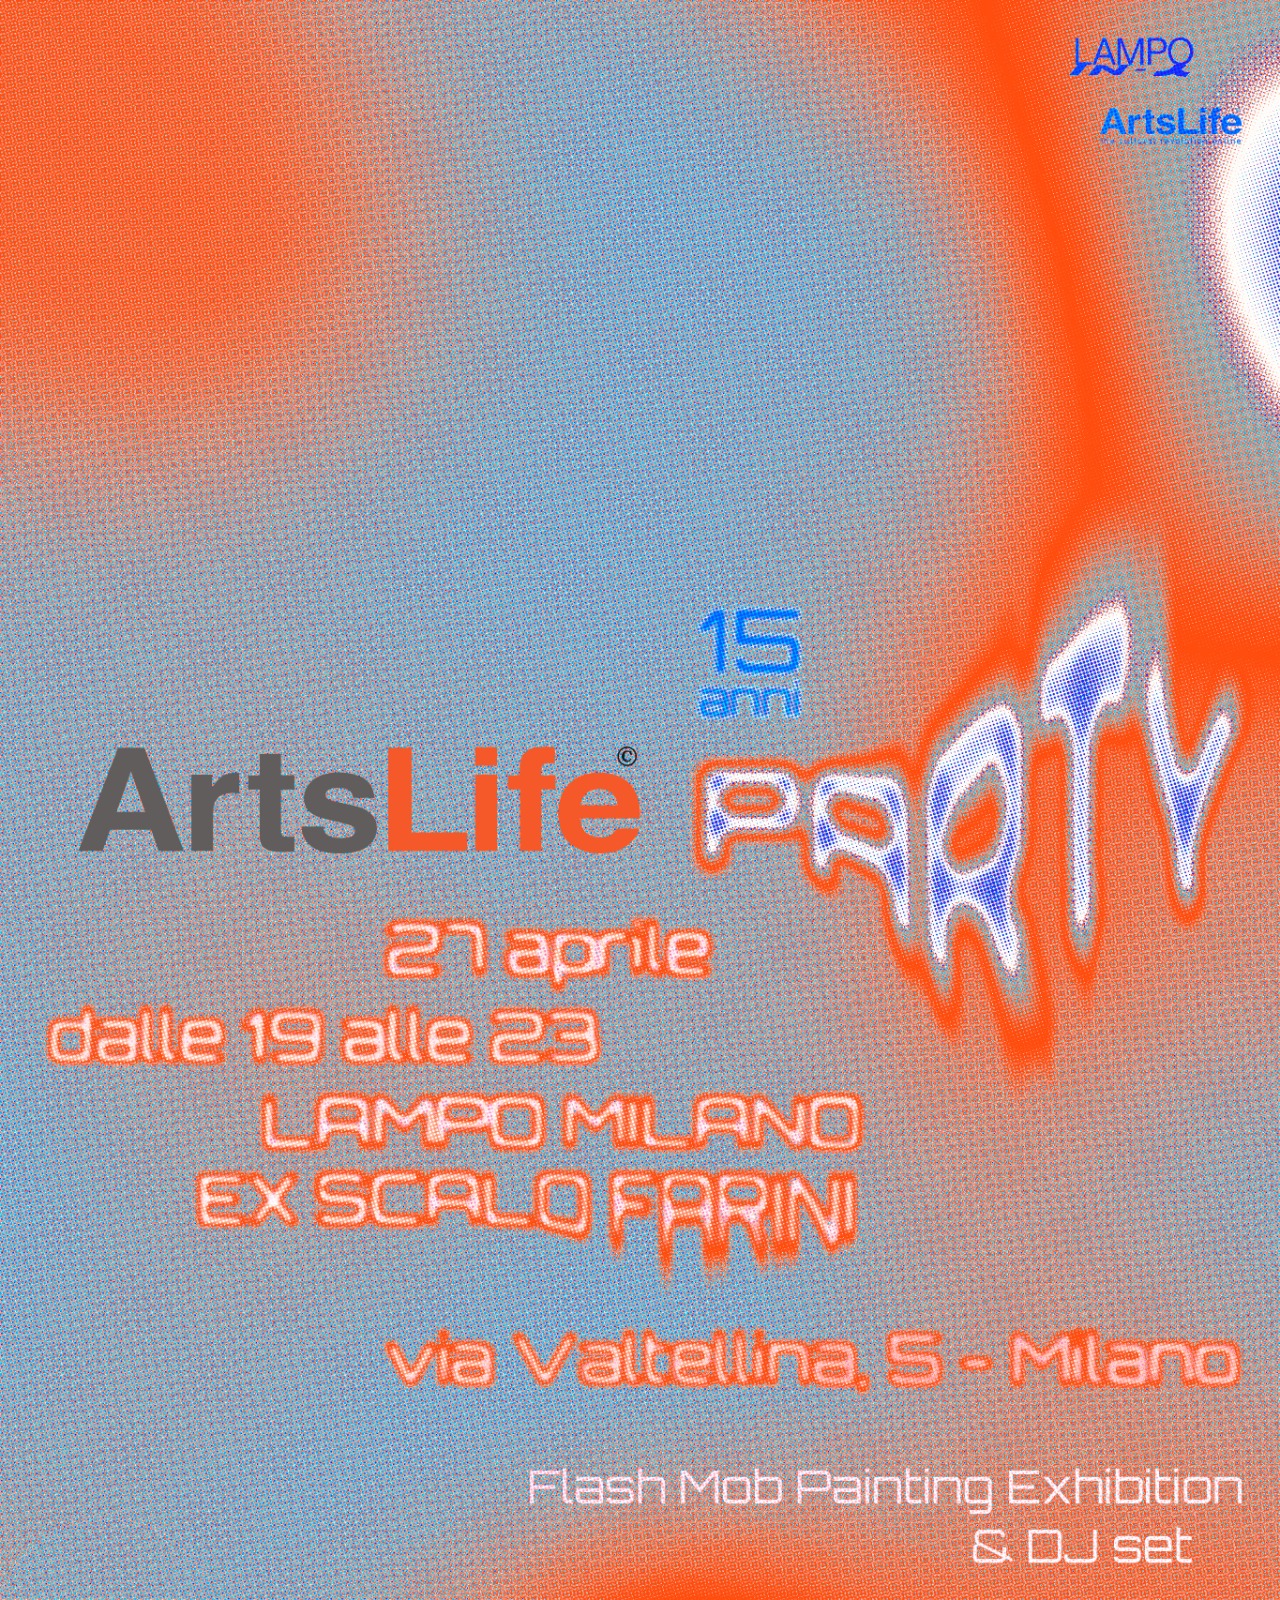 ArtsLife Party. Milano si illumina ancora con l’arte grazie a una serata aperta a tutti, a Lampo Milano ex Scalo Farini